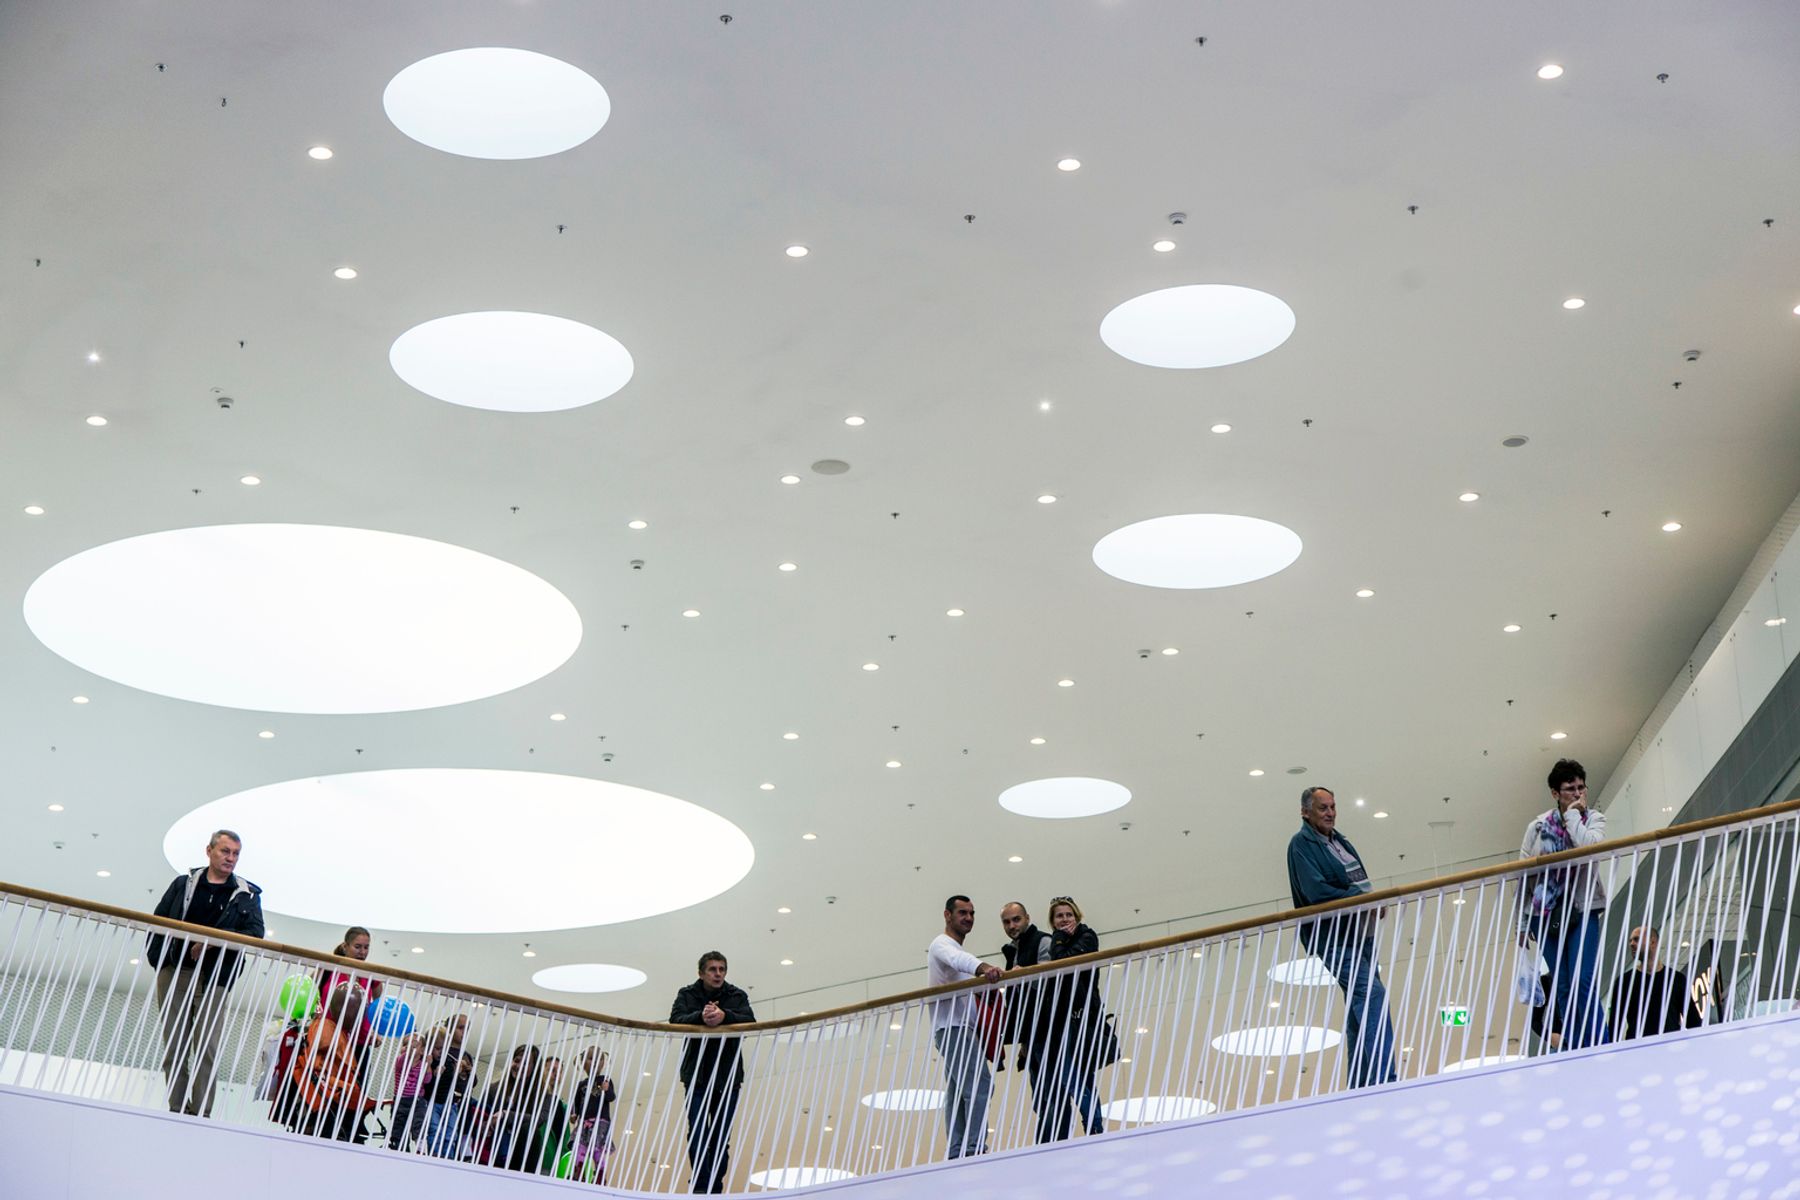 Centro commerciale Bory Mall, Bratislava. Architettura: Massimiliano Fuksas, Roma. Fotografia: Dirk Vogel, Dortmund